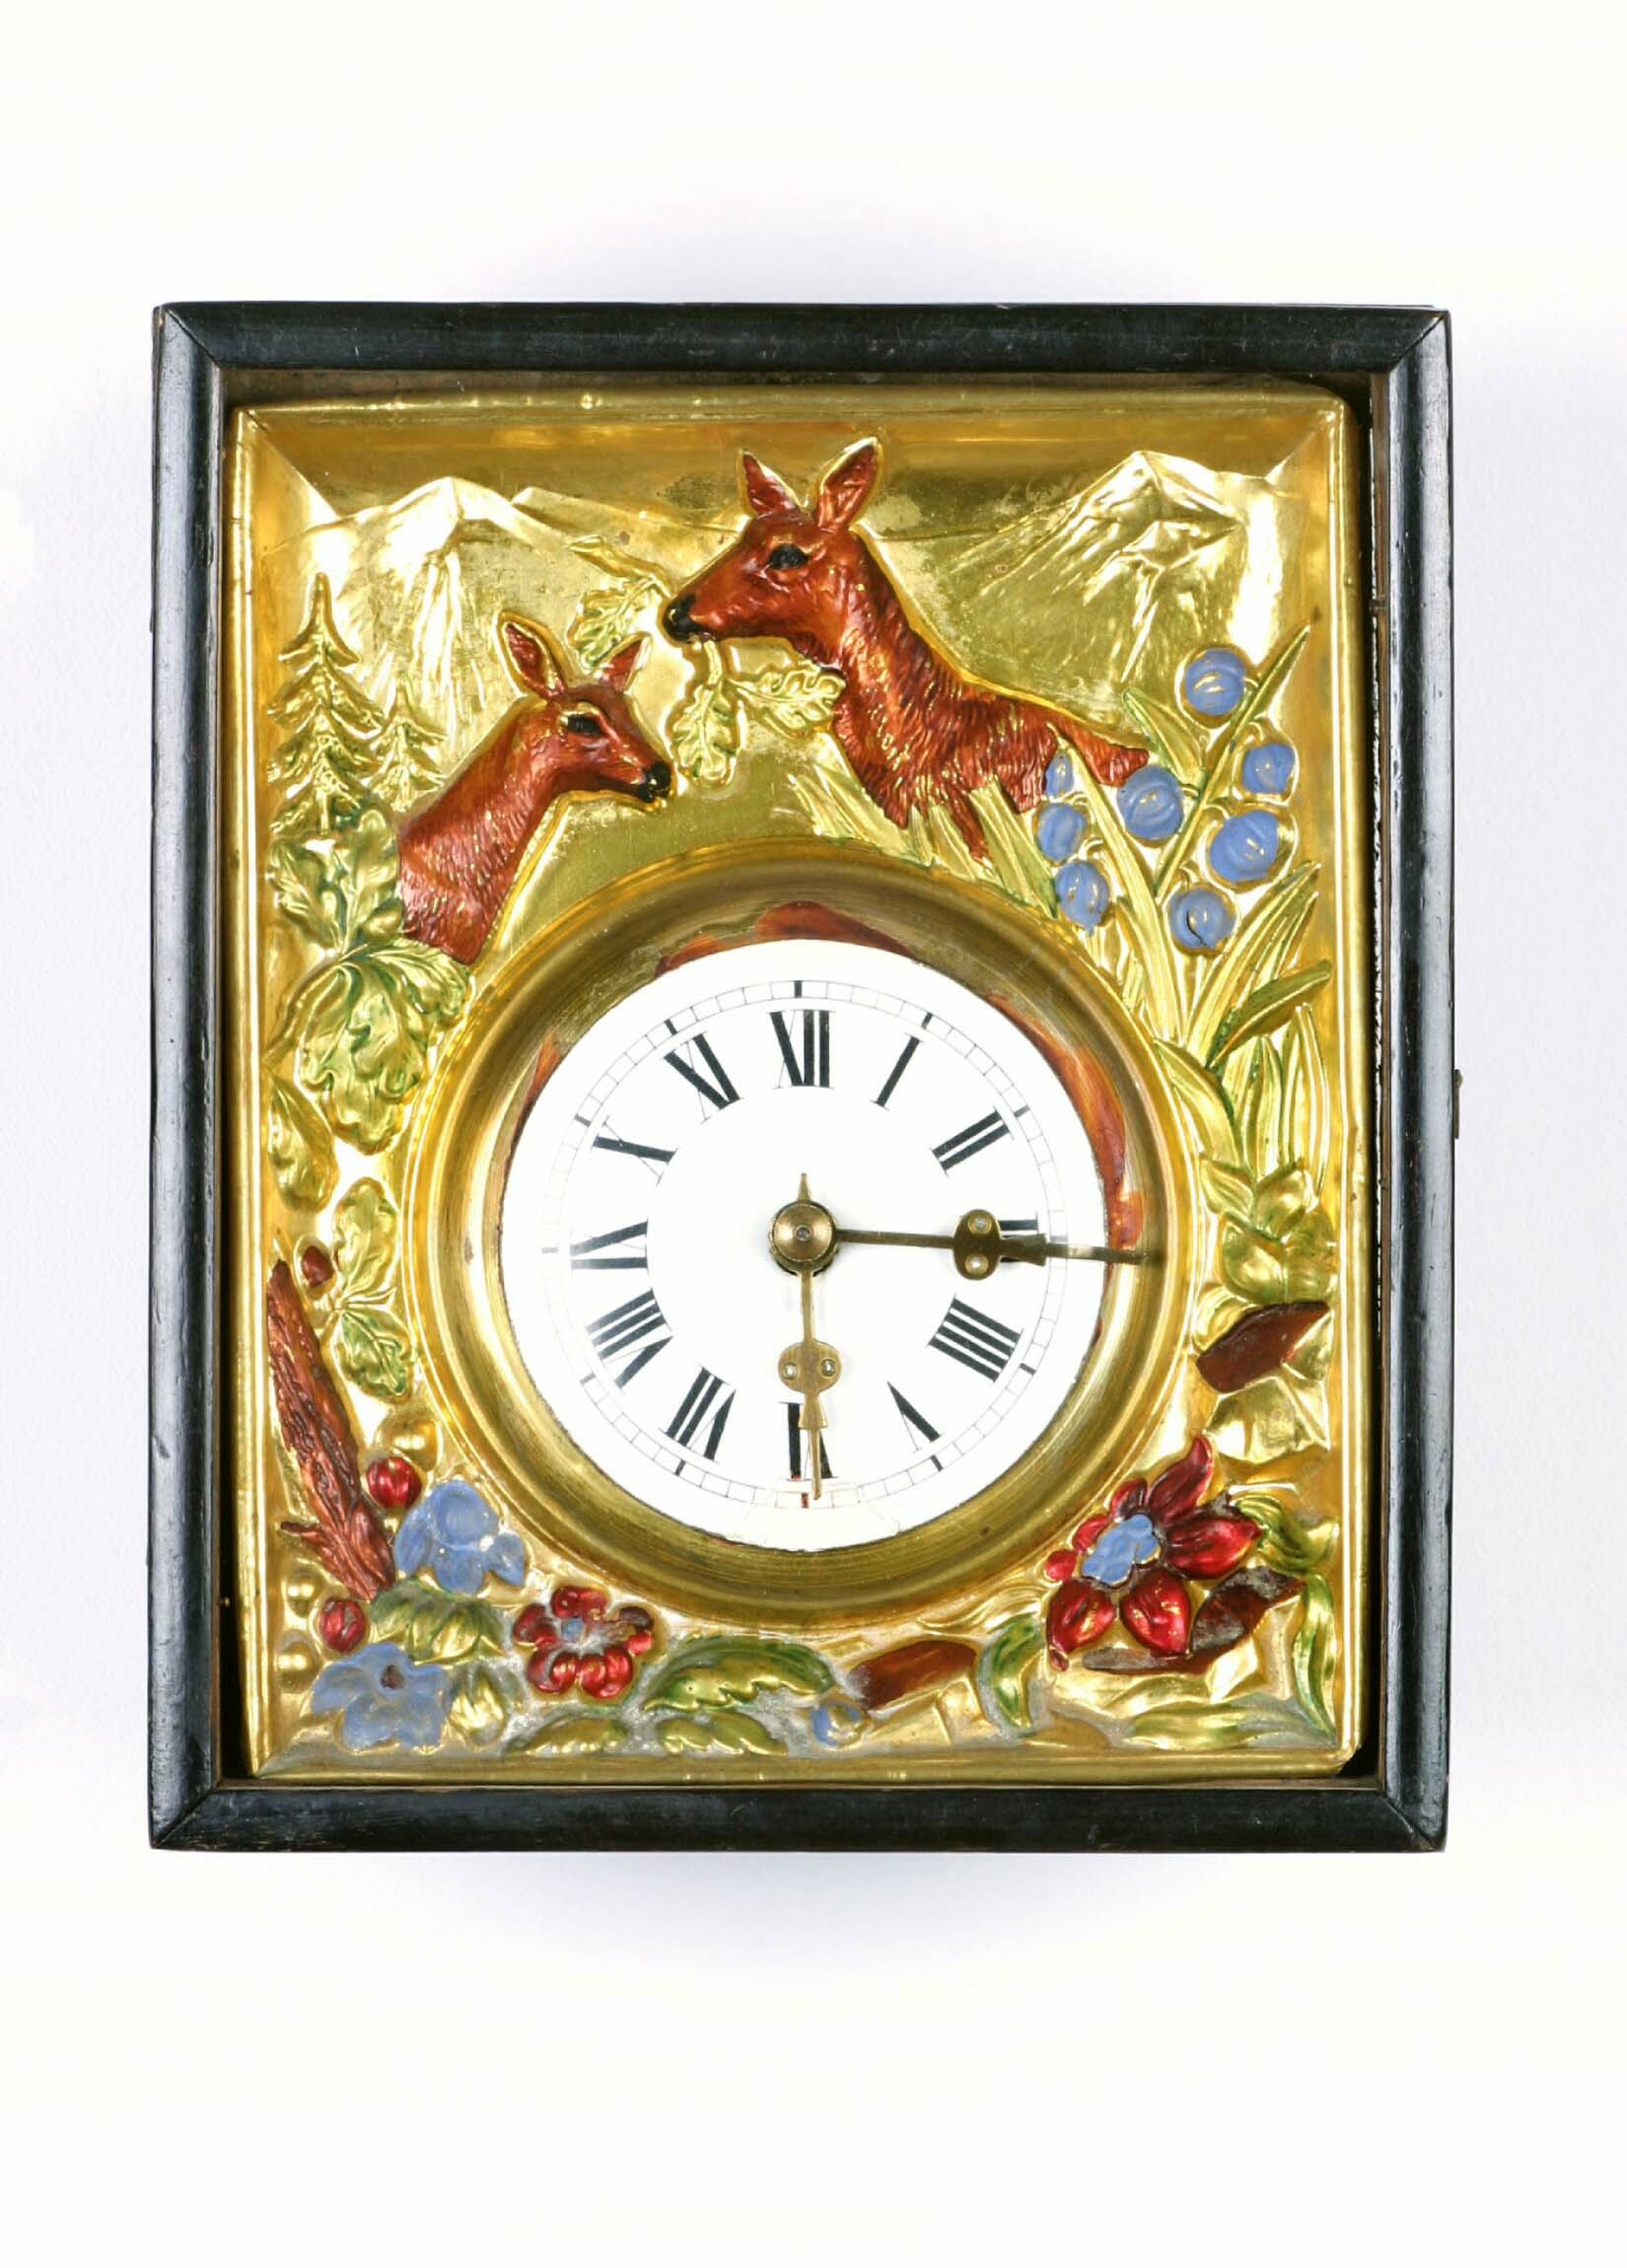 Rahmenuhr, Kienzle, Schwenningen, um 1900 (Deutsches Uhrenmuseum CC BY-SA)